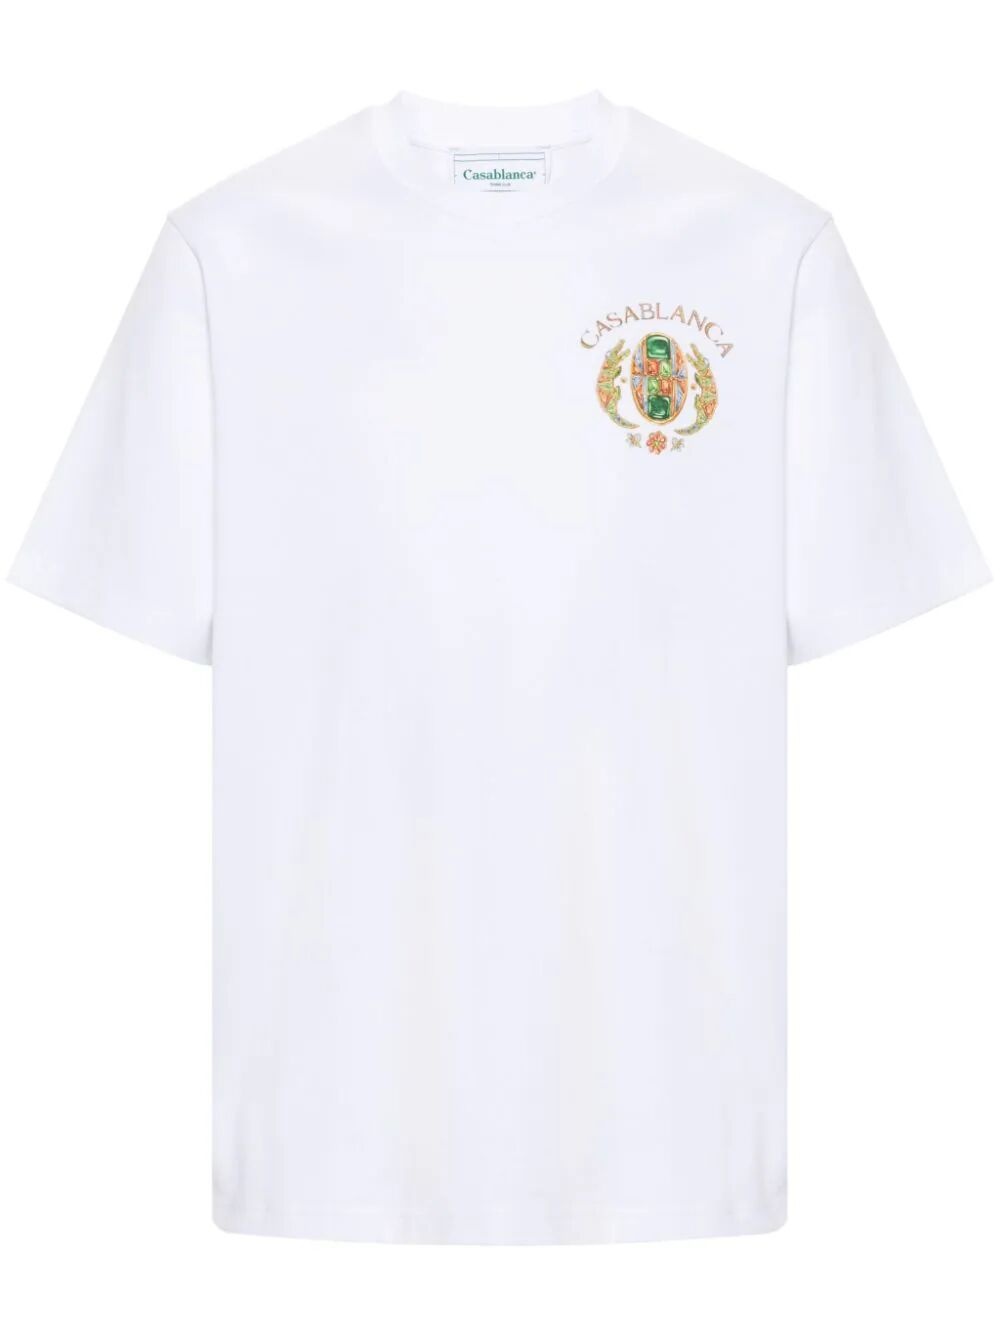 Joyaux d'afrique tennis club t-shirt - 1